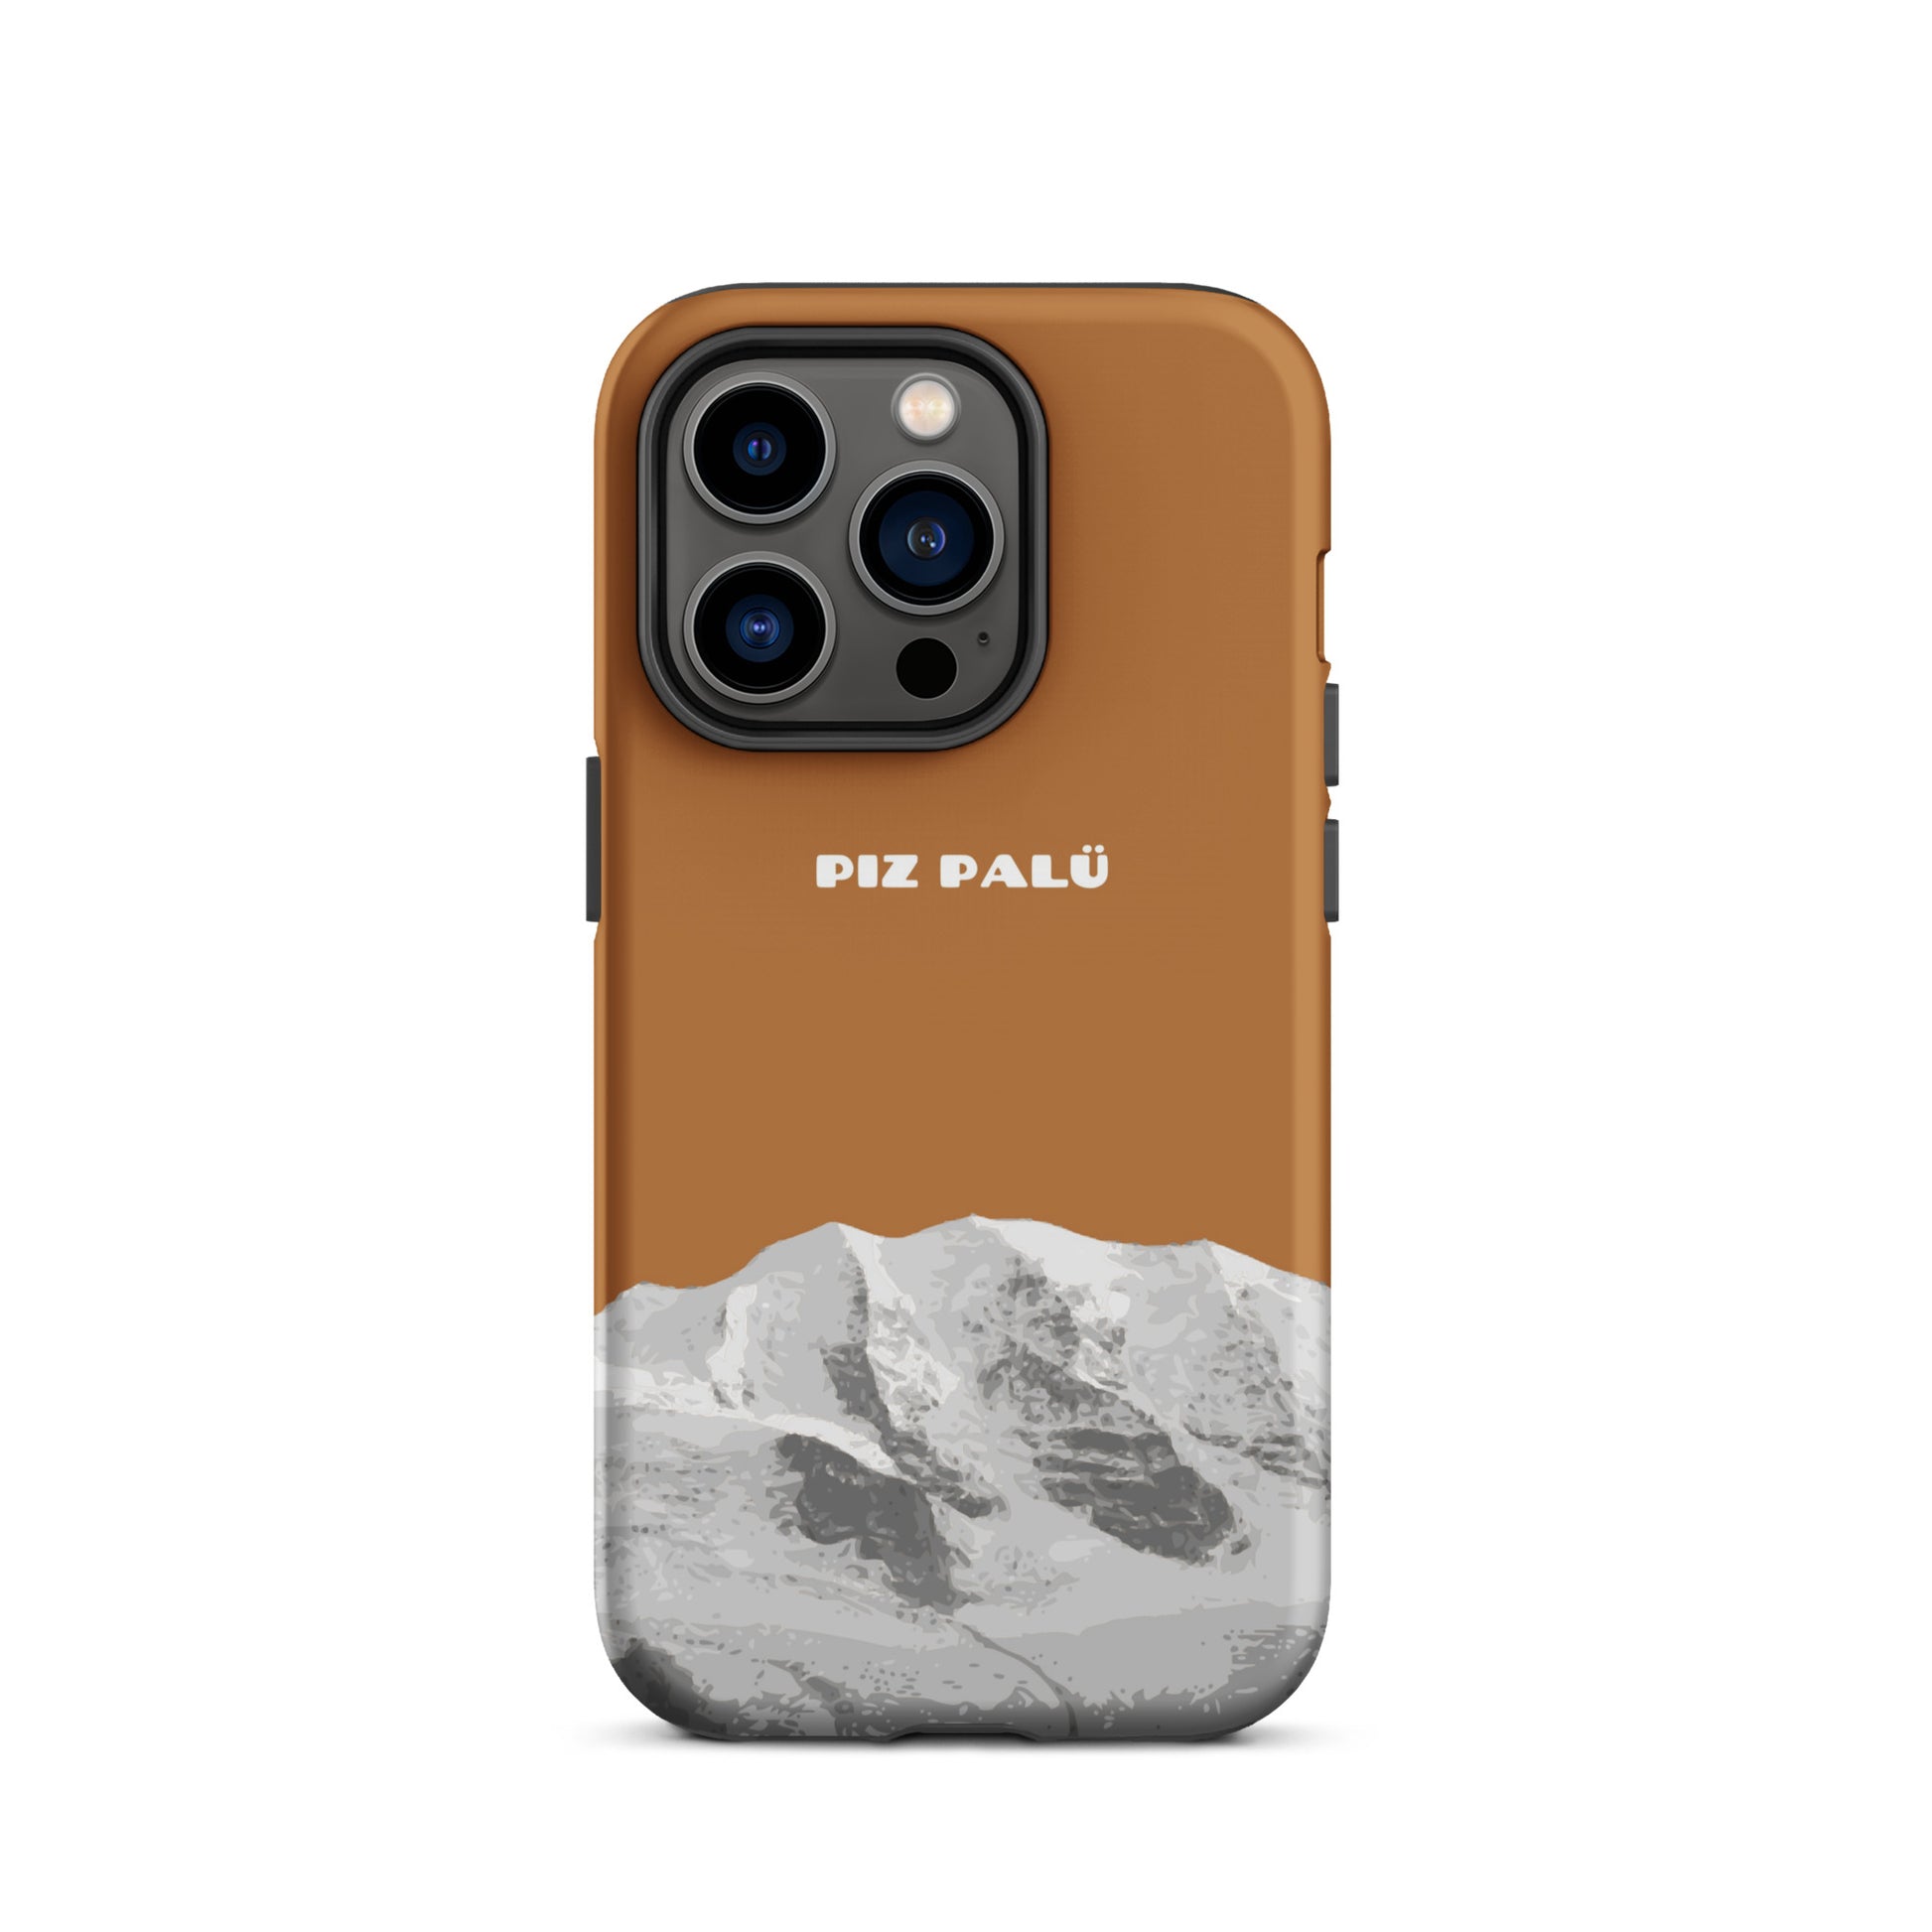 Hülle für das iPhone 14 Pro von Apple in der Farbe Kupfer, dass den Piz Palü in Graubünden zeigt.